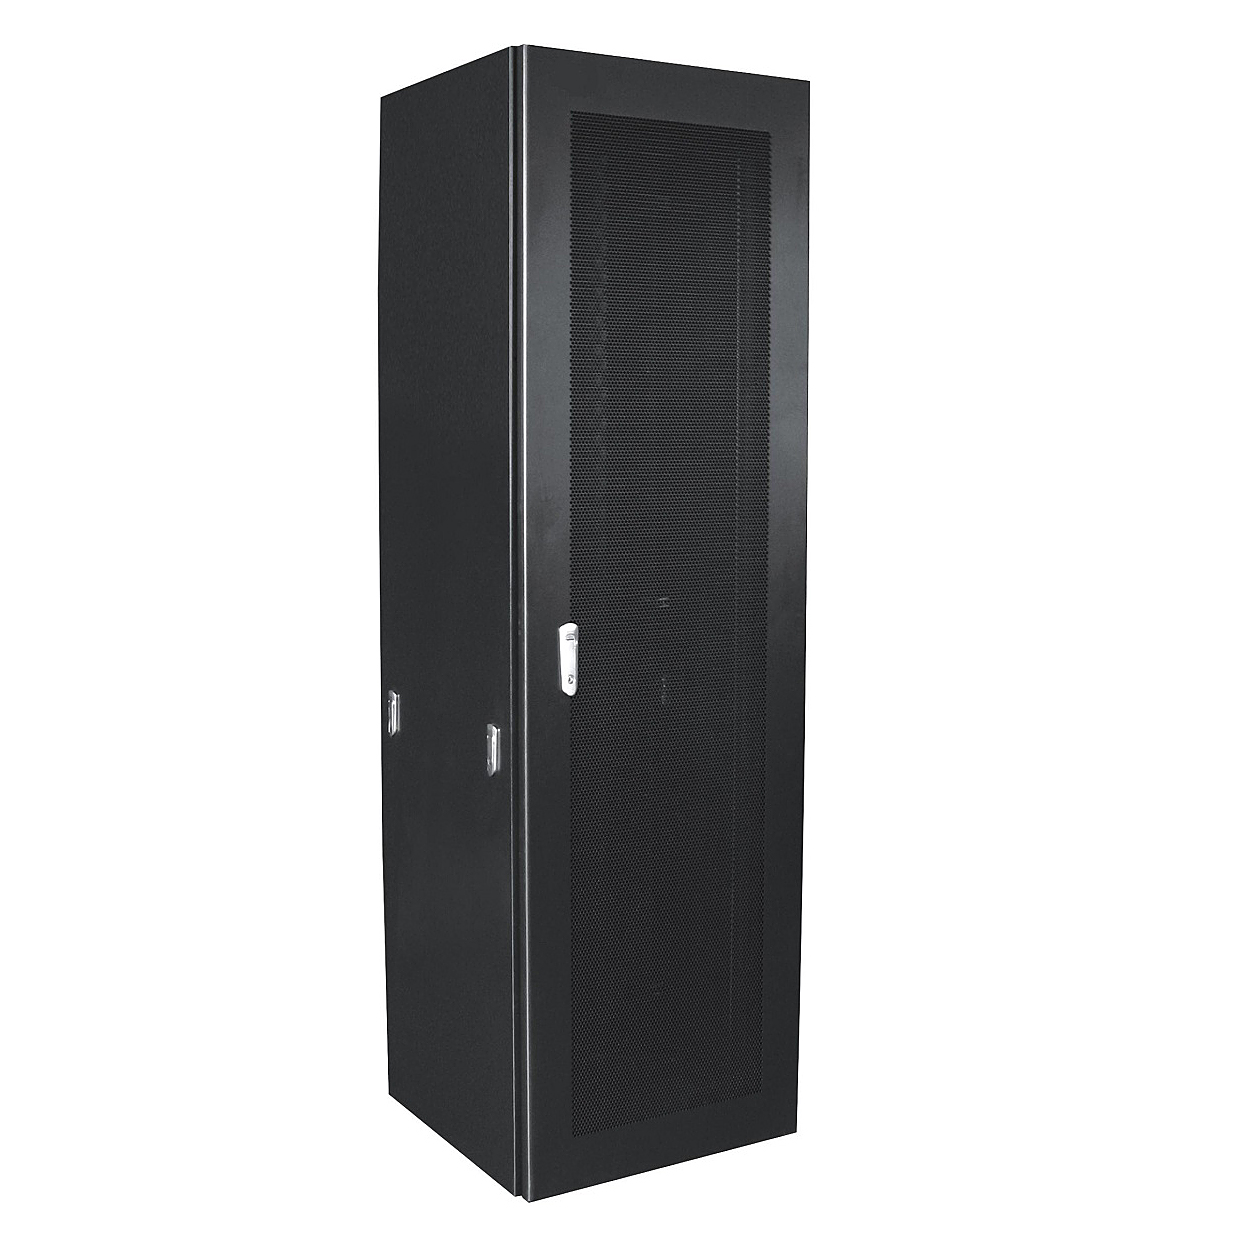 ABNET Cabinet 42U-800, gồm 2 quạt, 1 ổ cắm 6 Outlet 42U800